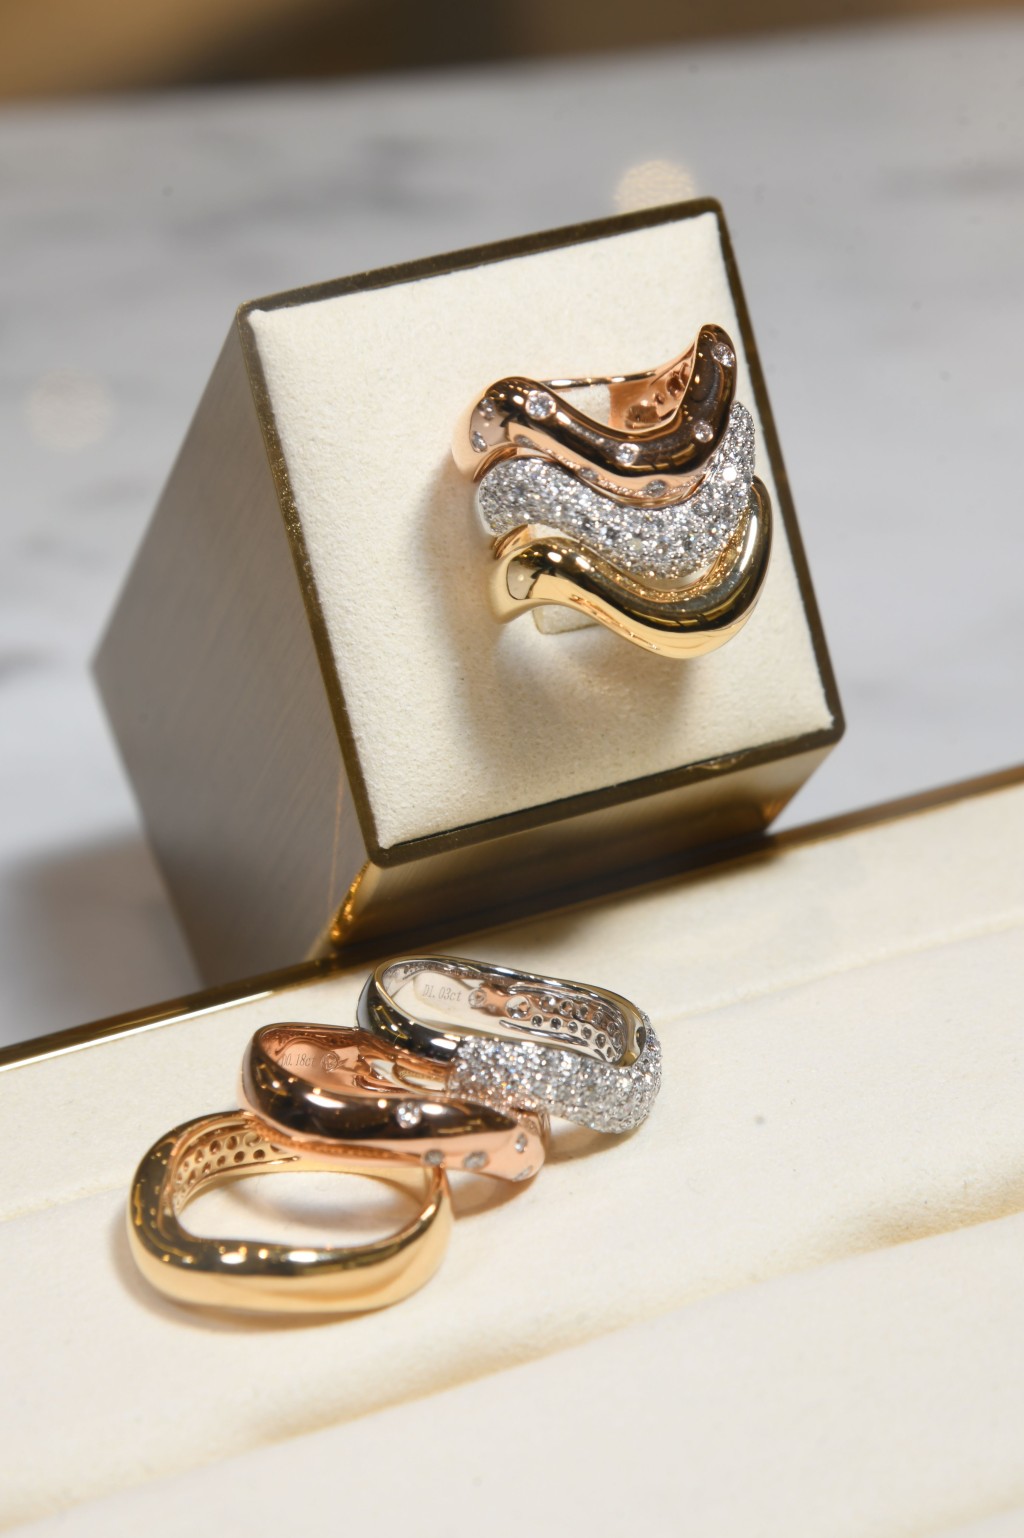 同样可以单独或叠戴的流丽型态钻石指环。